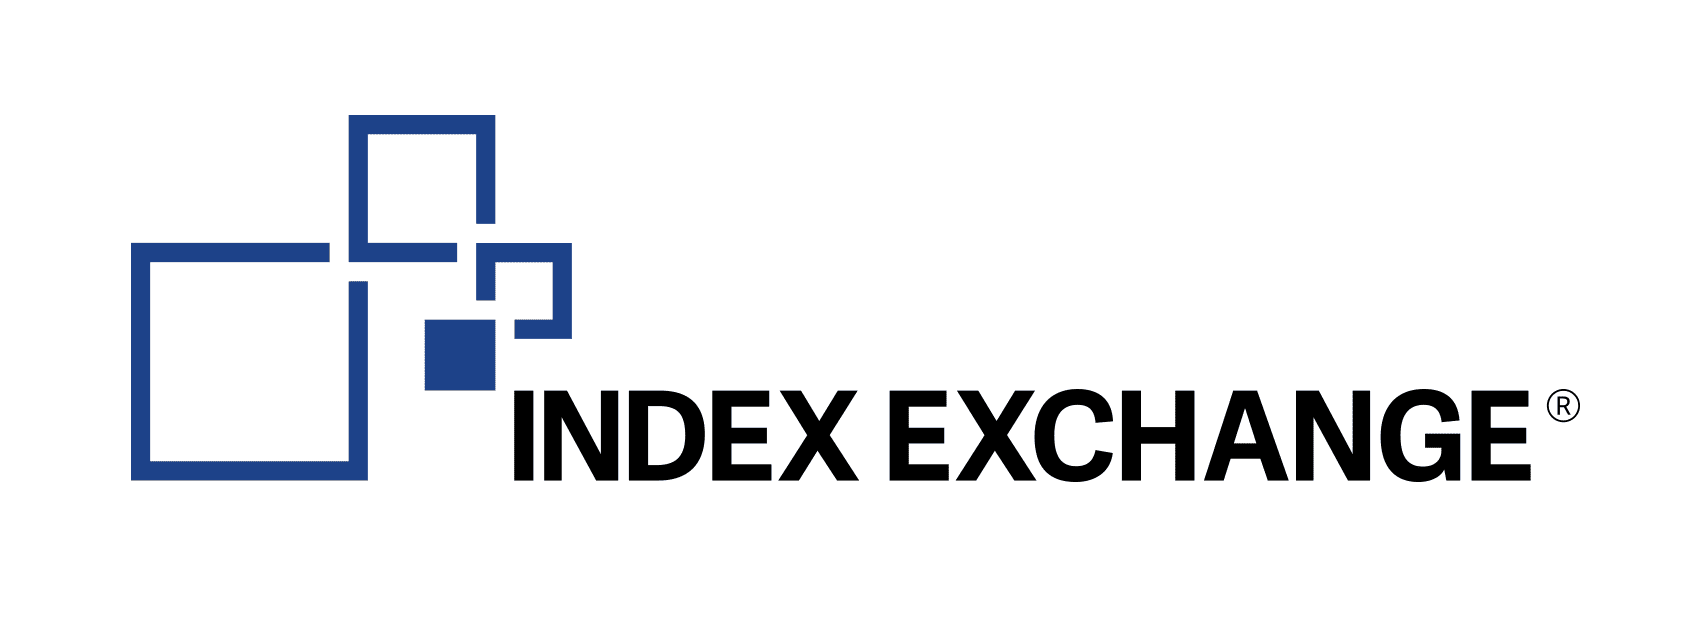 IndexExchange-3_0